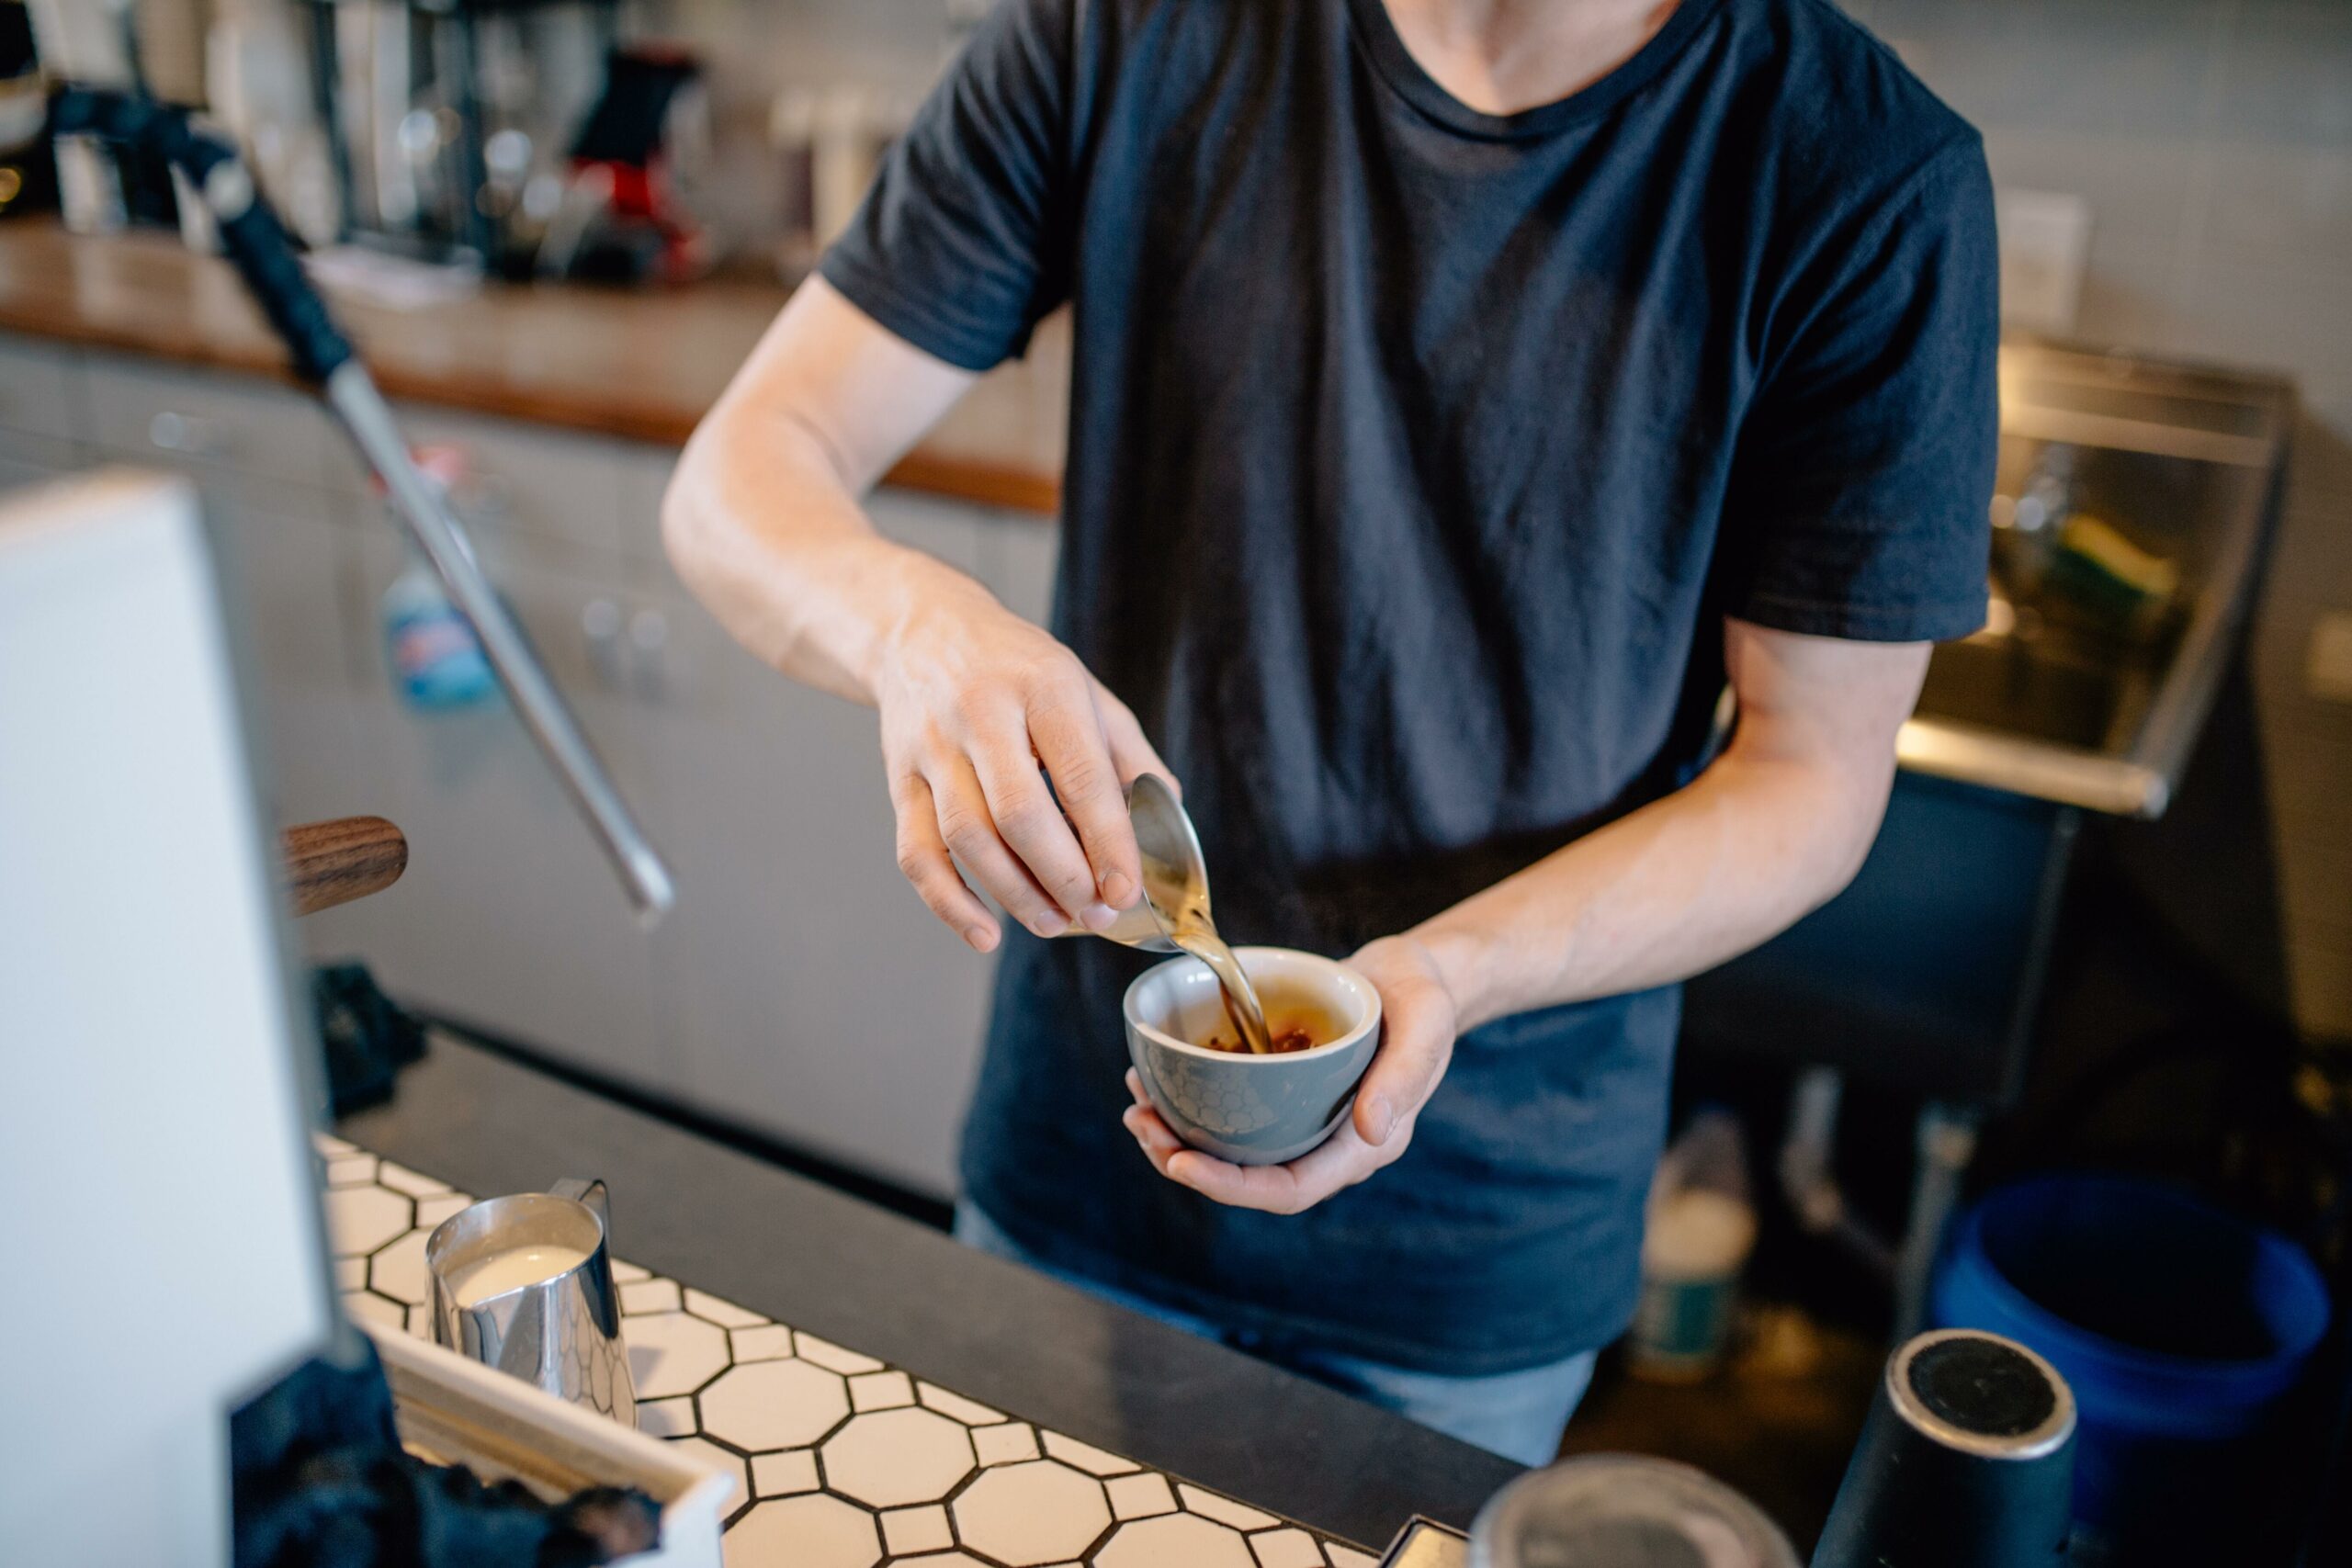 Kaffee kochen können alle? Der Job als Barista bringt viele an ihre Grenzen – und die Bedingungen sind nicht die besten. Foto: Unsplash/Ian Harber